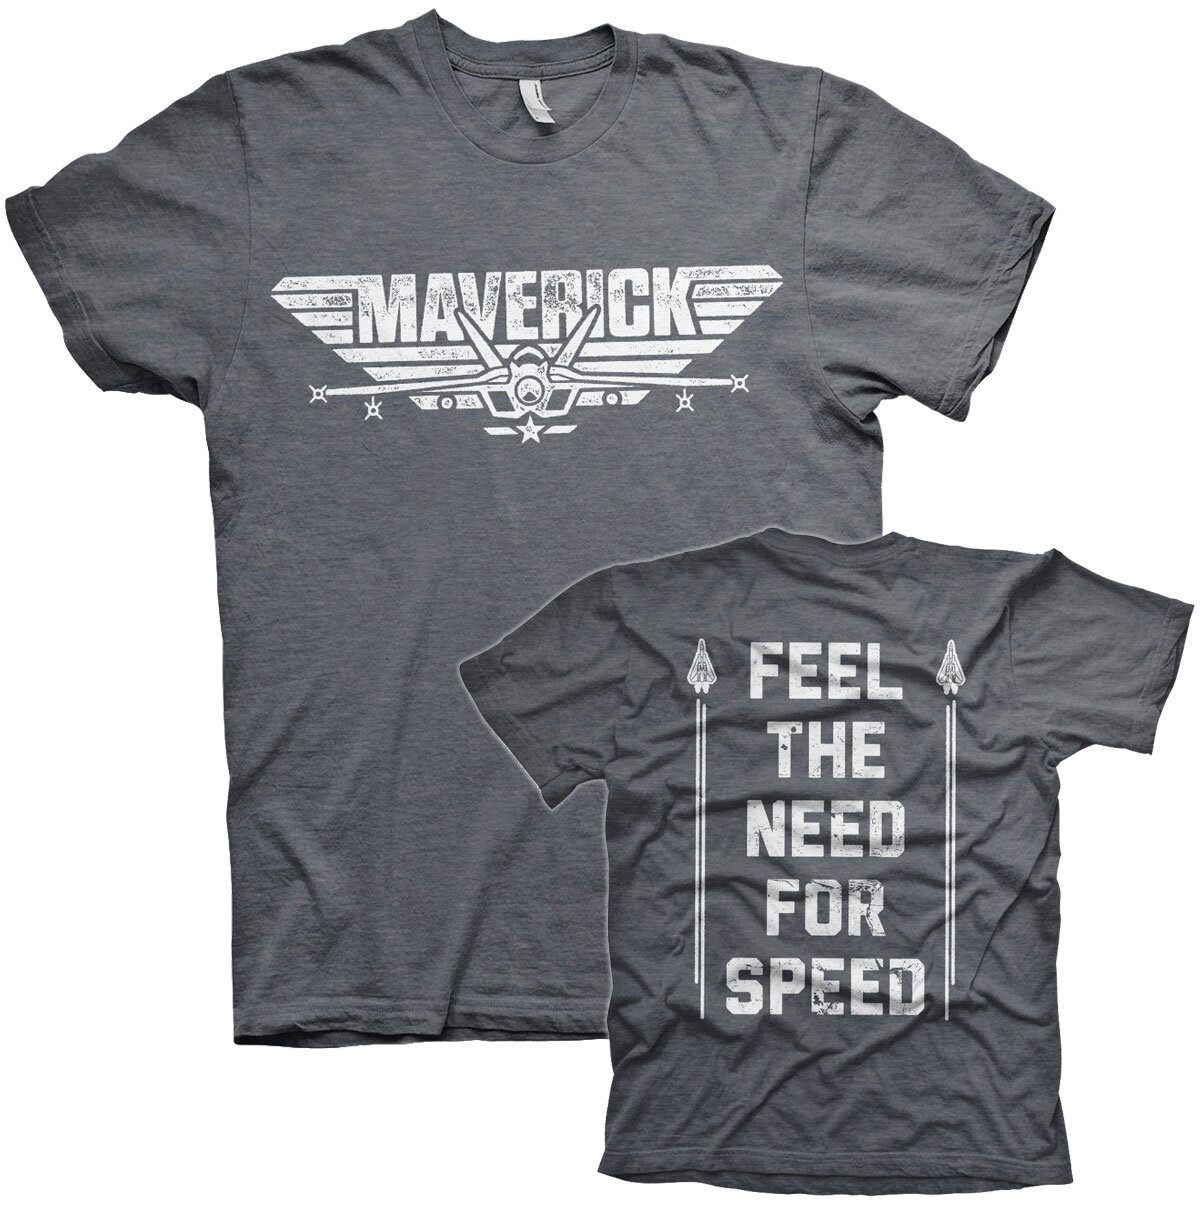 Top Gun Maverick - Need For Speed T-Shirt - Shirtstore